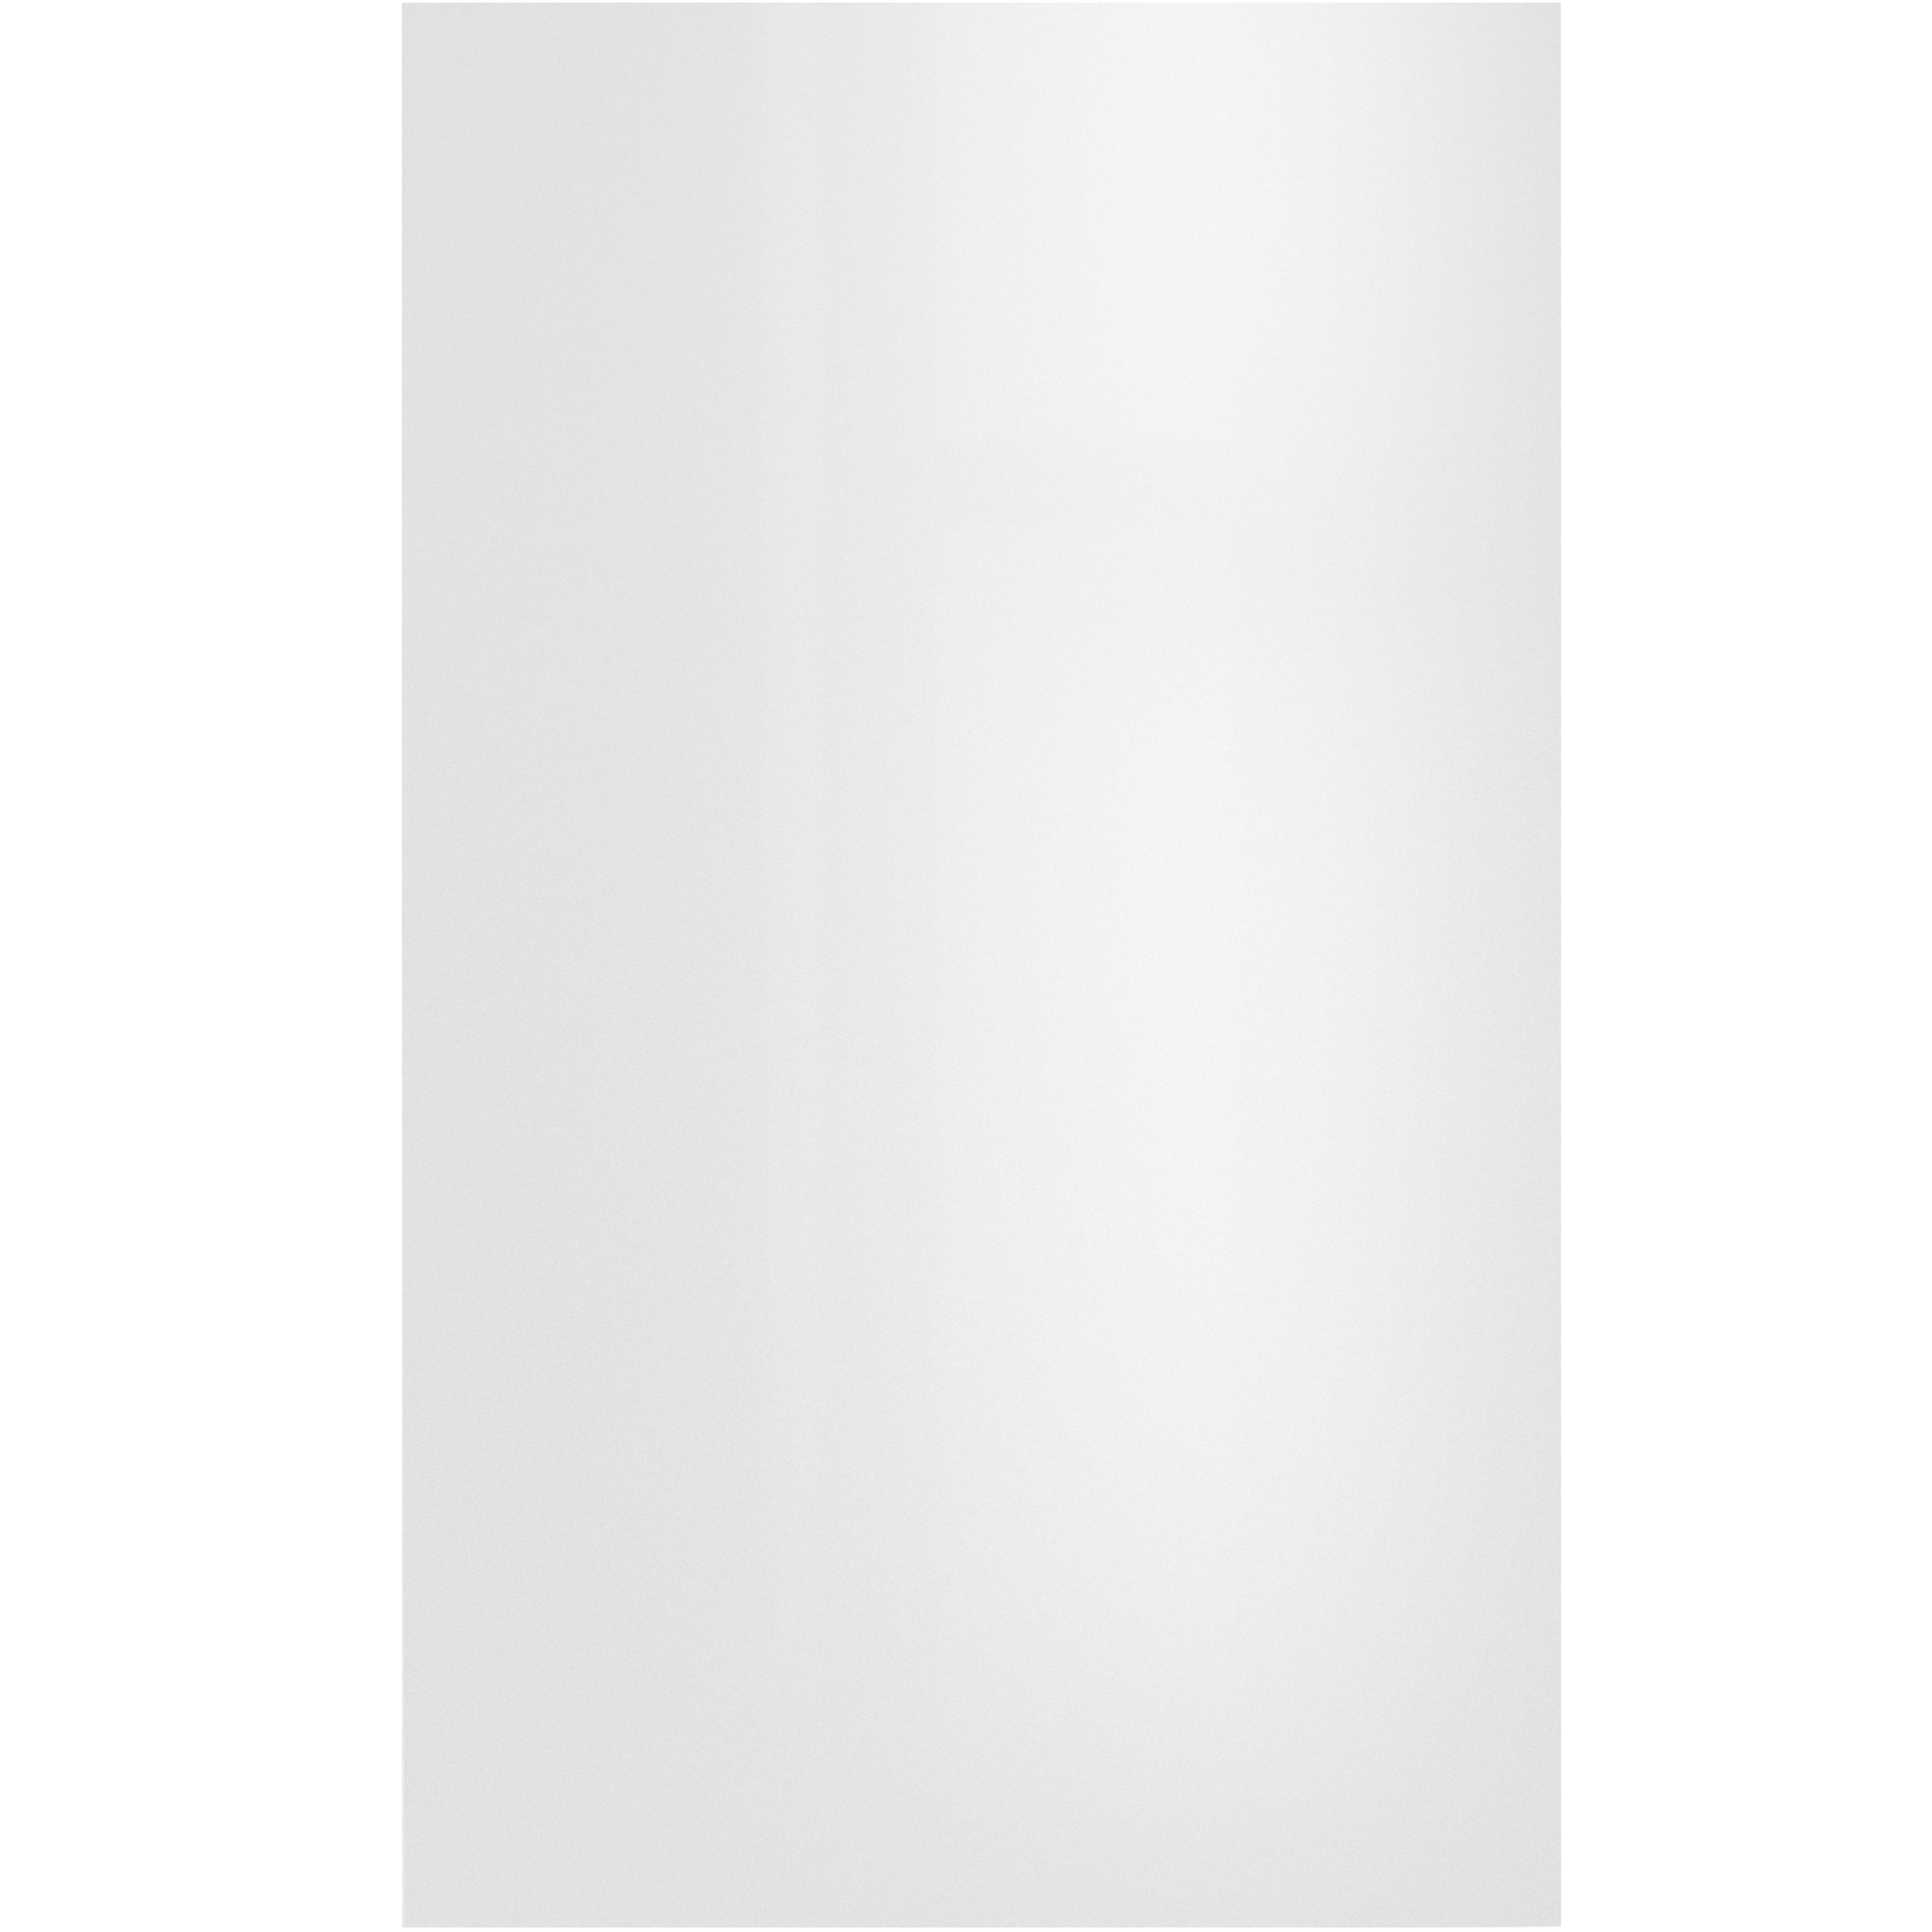 Puerta para mueble de cocina Sevilla blanco brillo H 76.8 x L 45